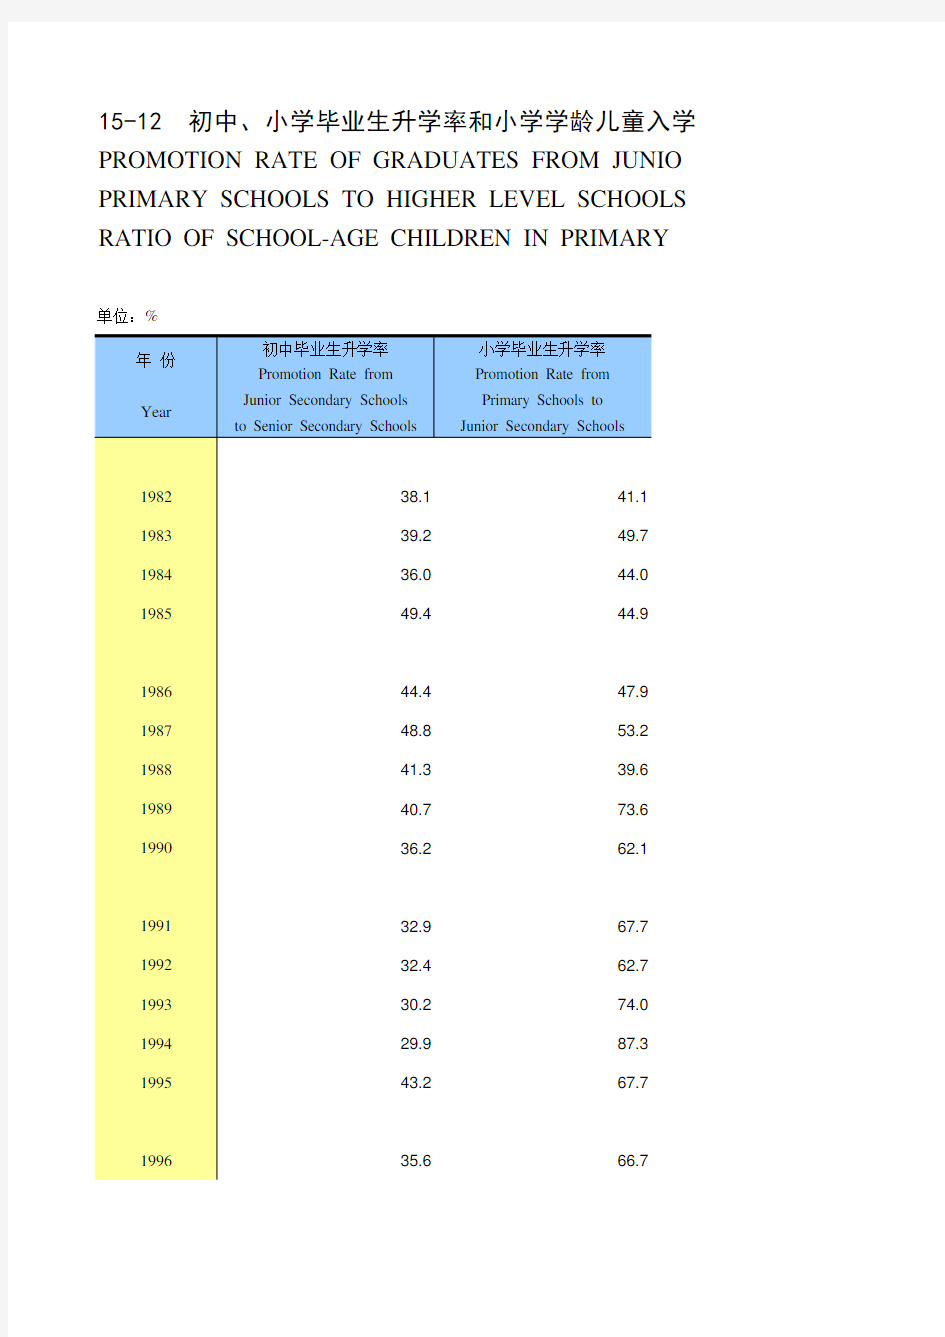 西藏社会经济发展数据：15-12_初中、小学毕业生升学率和小学学龄儿童入学率(1982-2018)